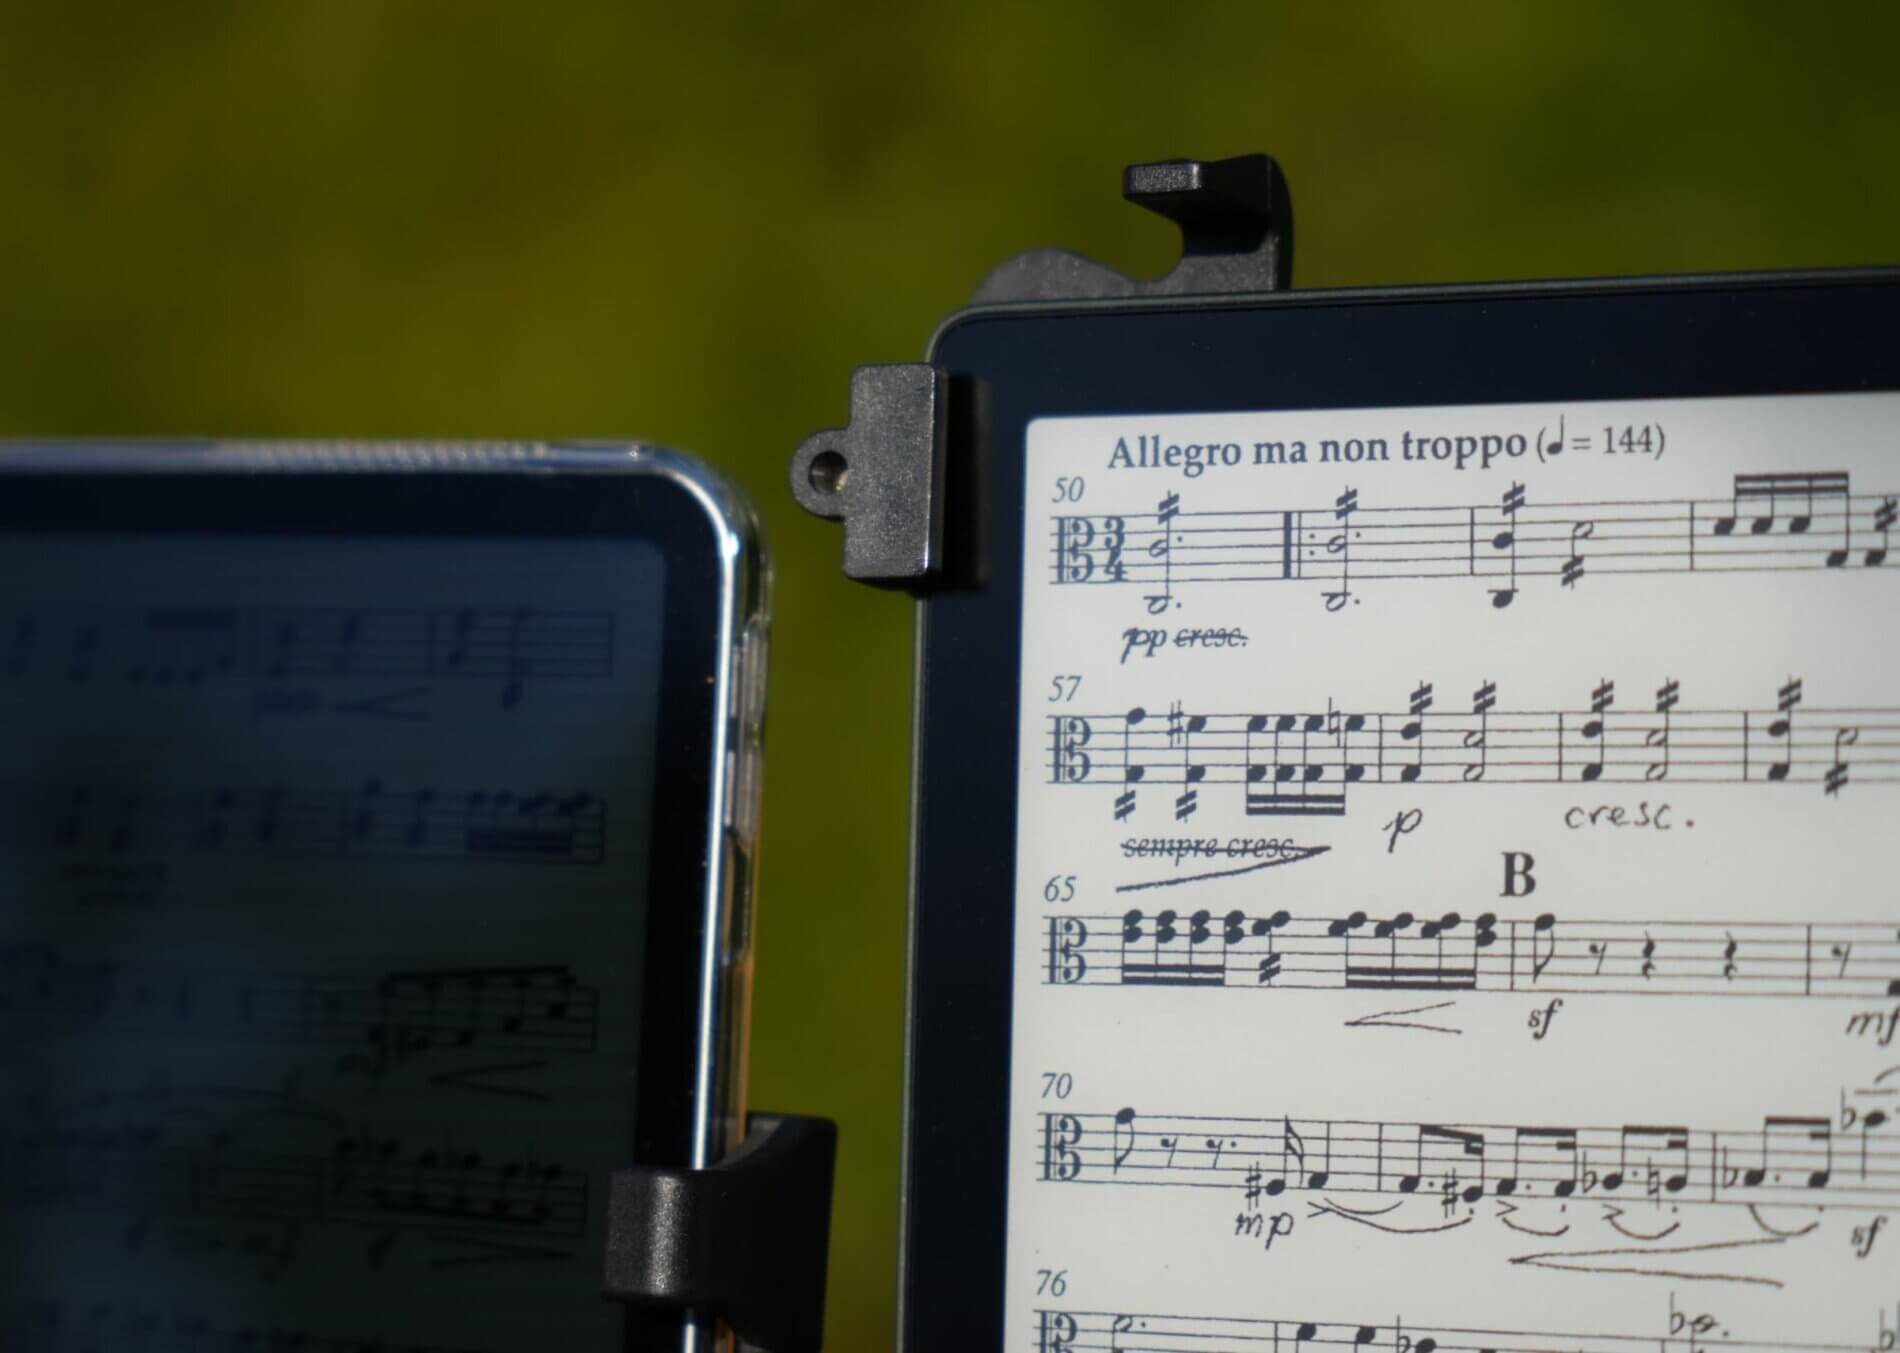 Ein E-Reader und ein Tablet (iPad) mit Musiknoten in direktem Sonnenlicht